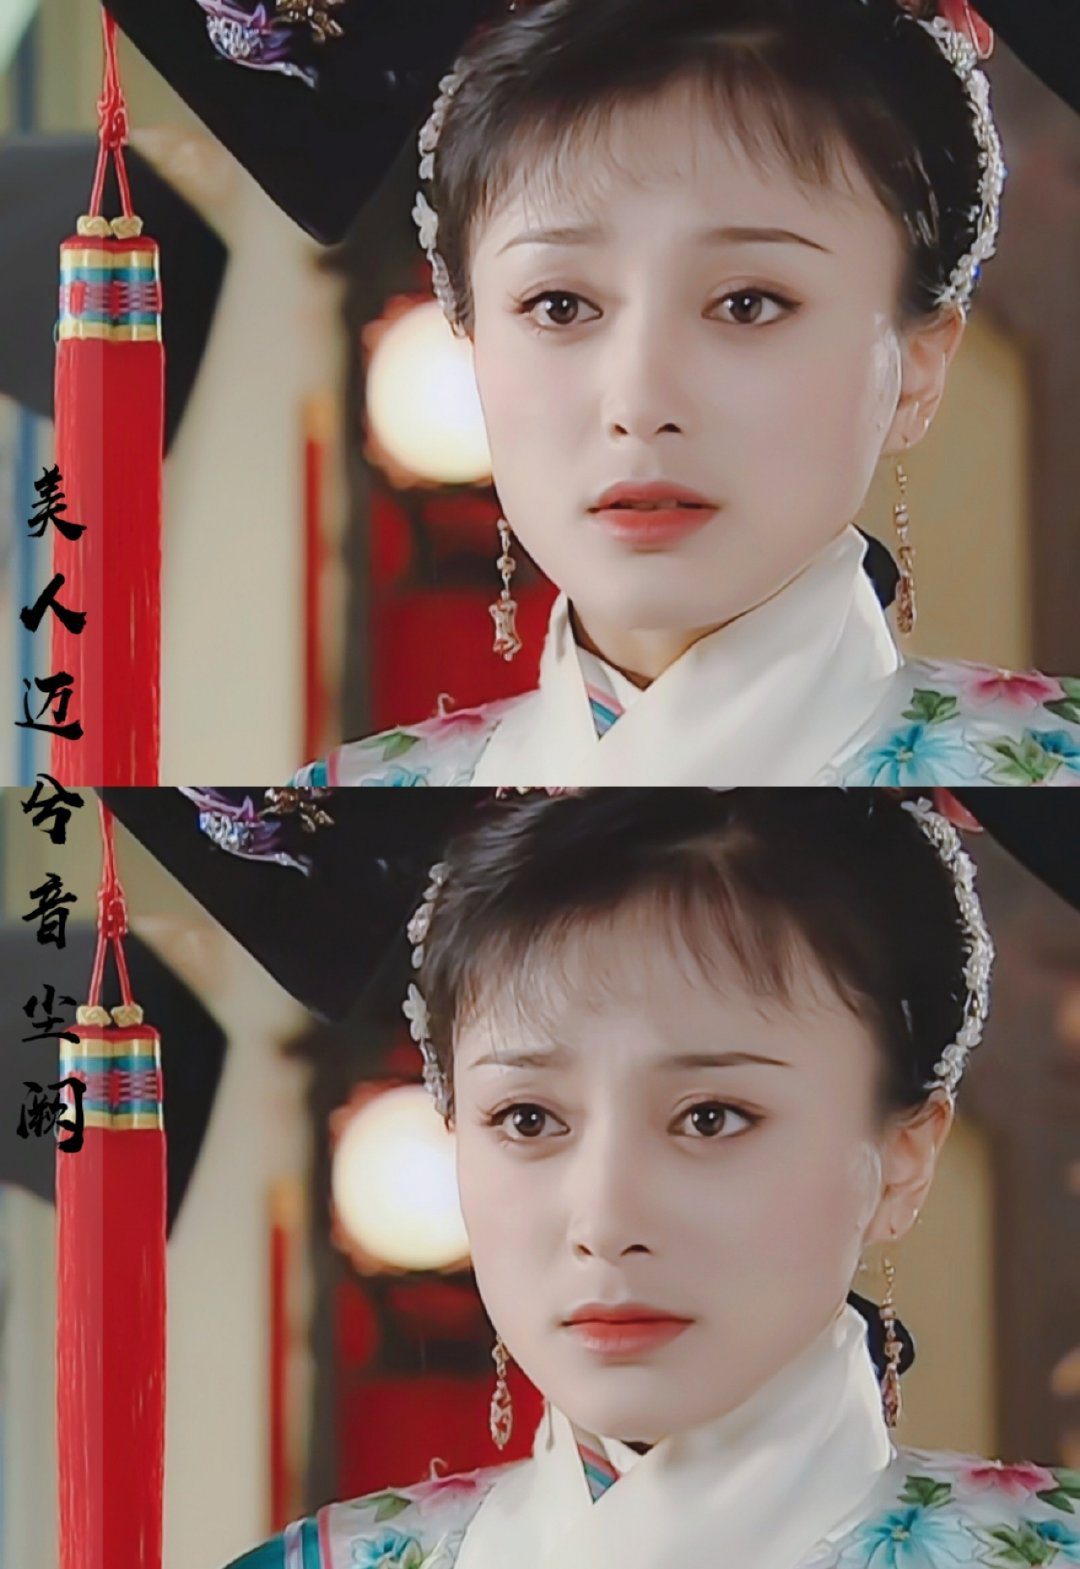 从《还珠格格3》中的知画到《延禧攻略》中的富察皇后,秦岚的清宫造型